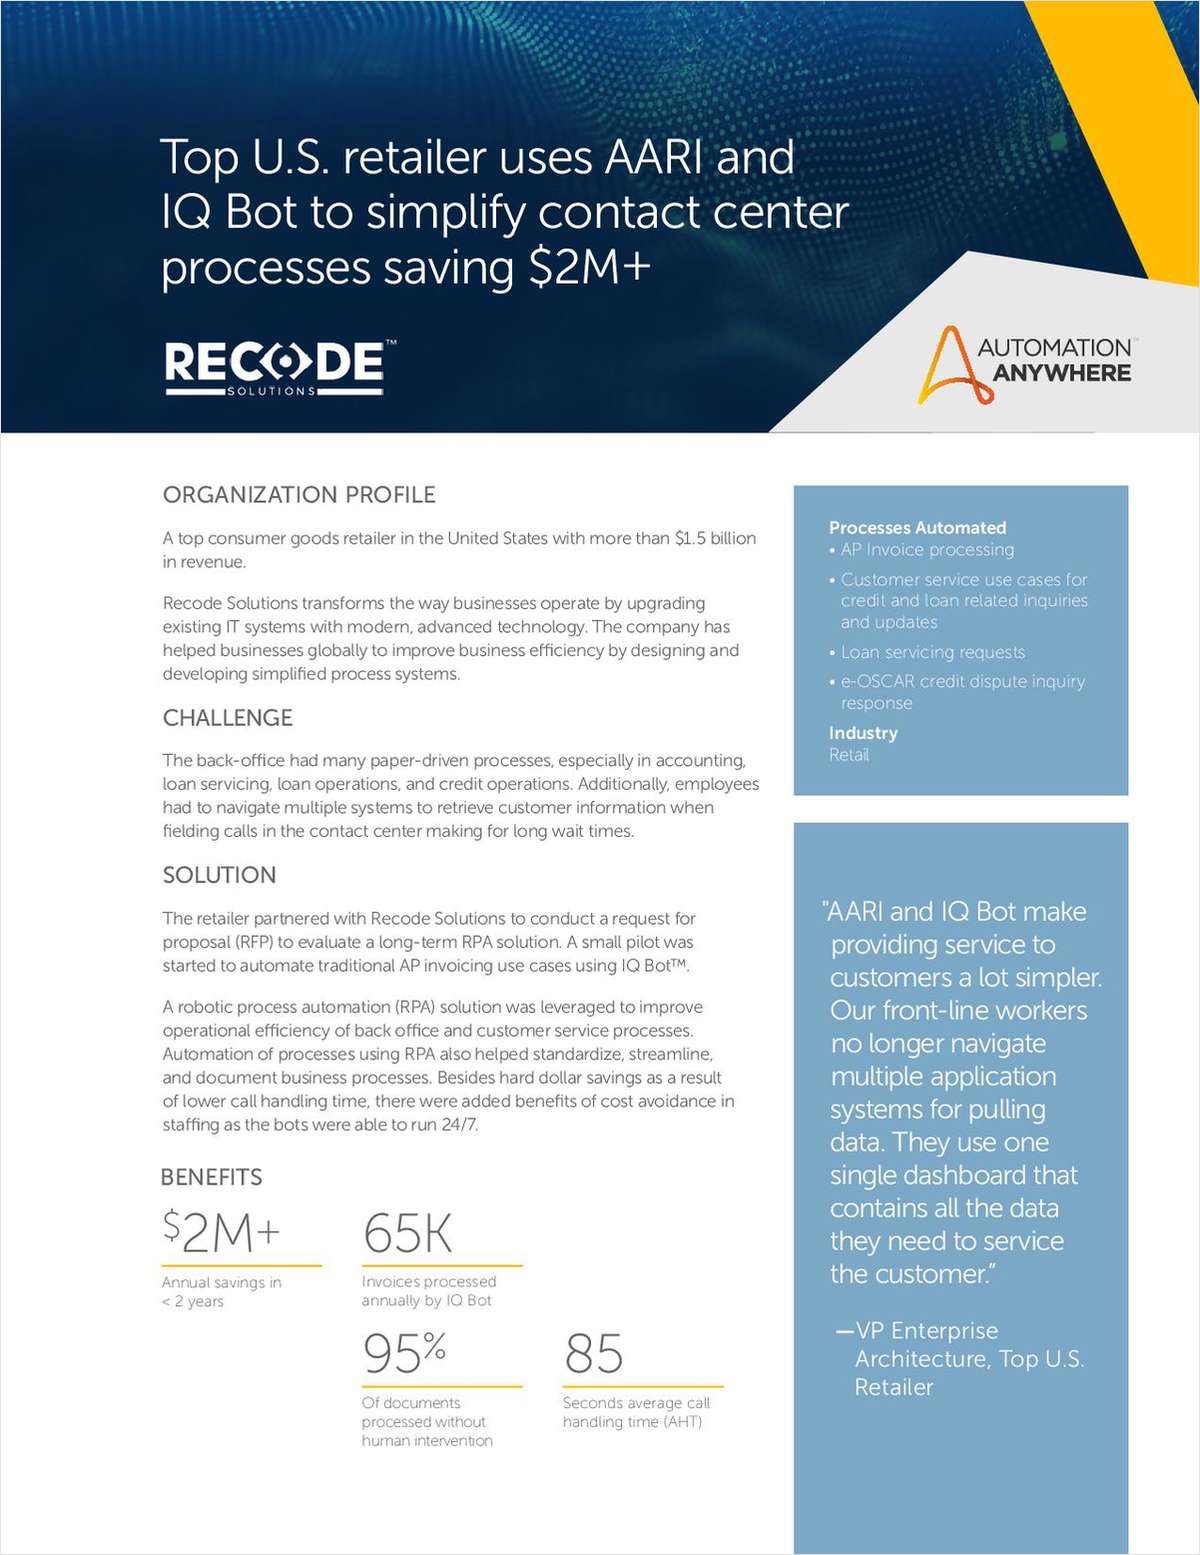 Top U.S. retailer simplifies contact center processes with AARI and IQ Bot, saving $2M+